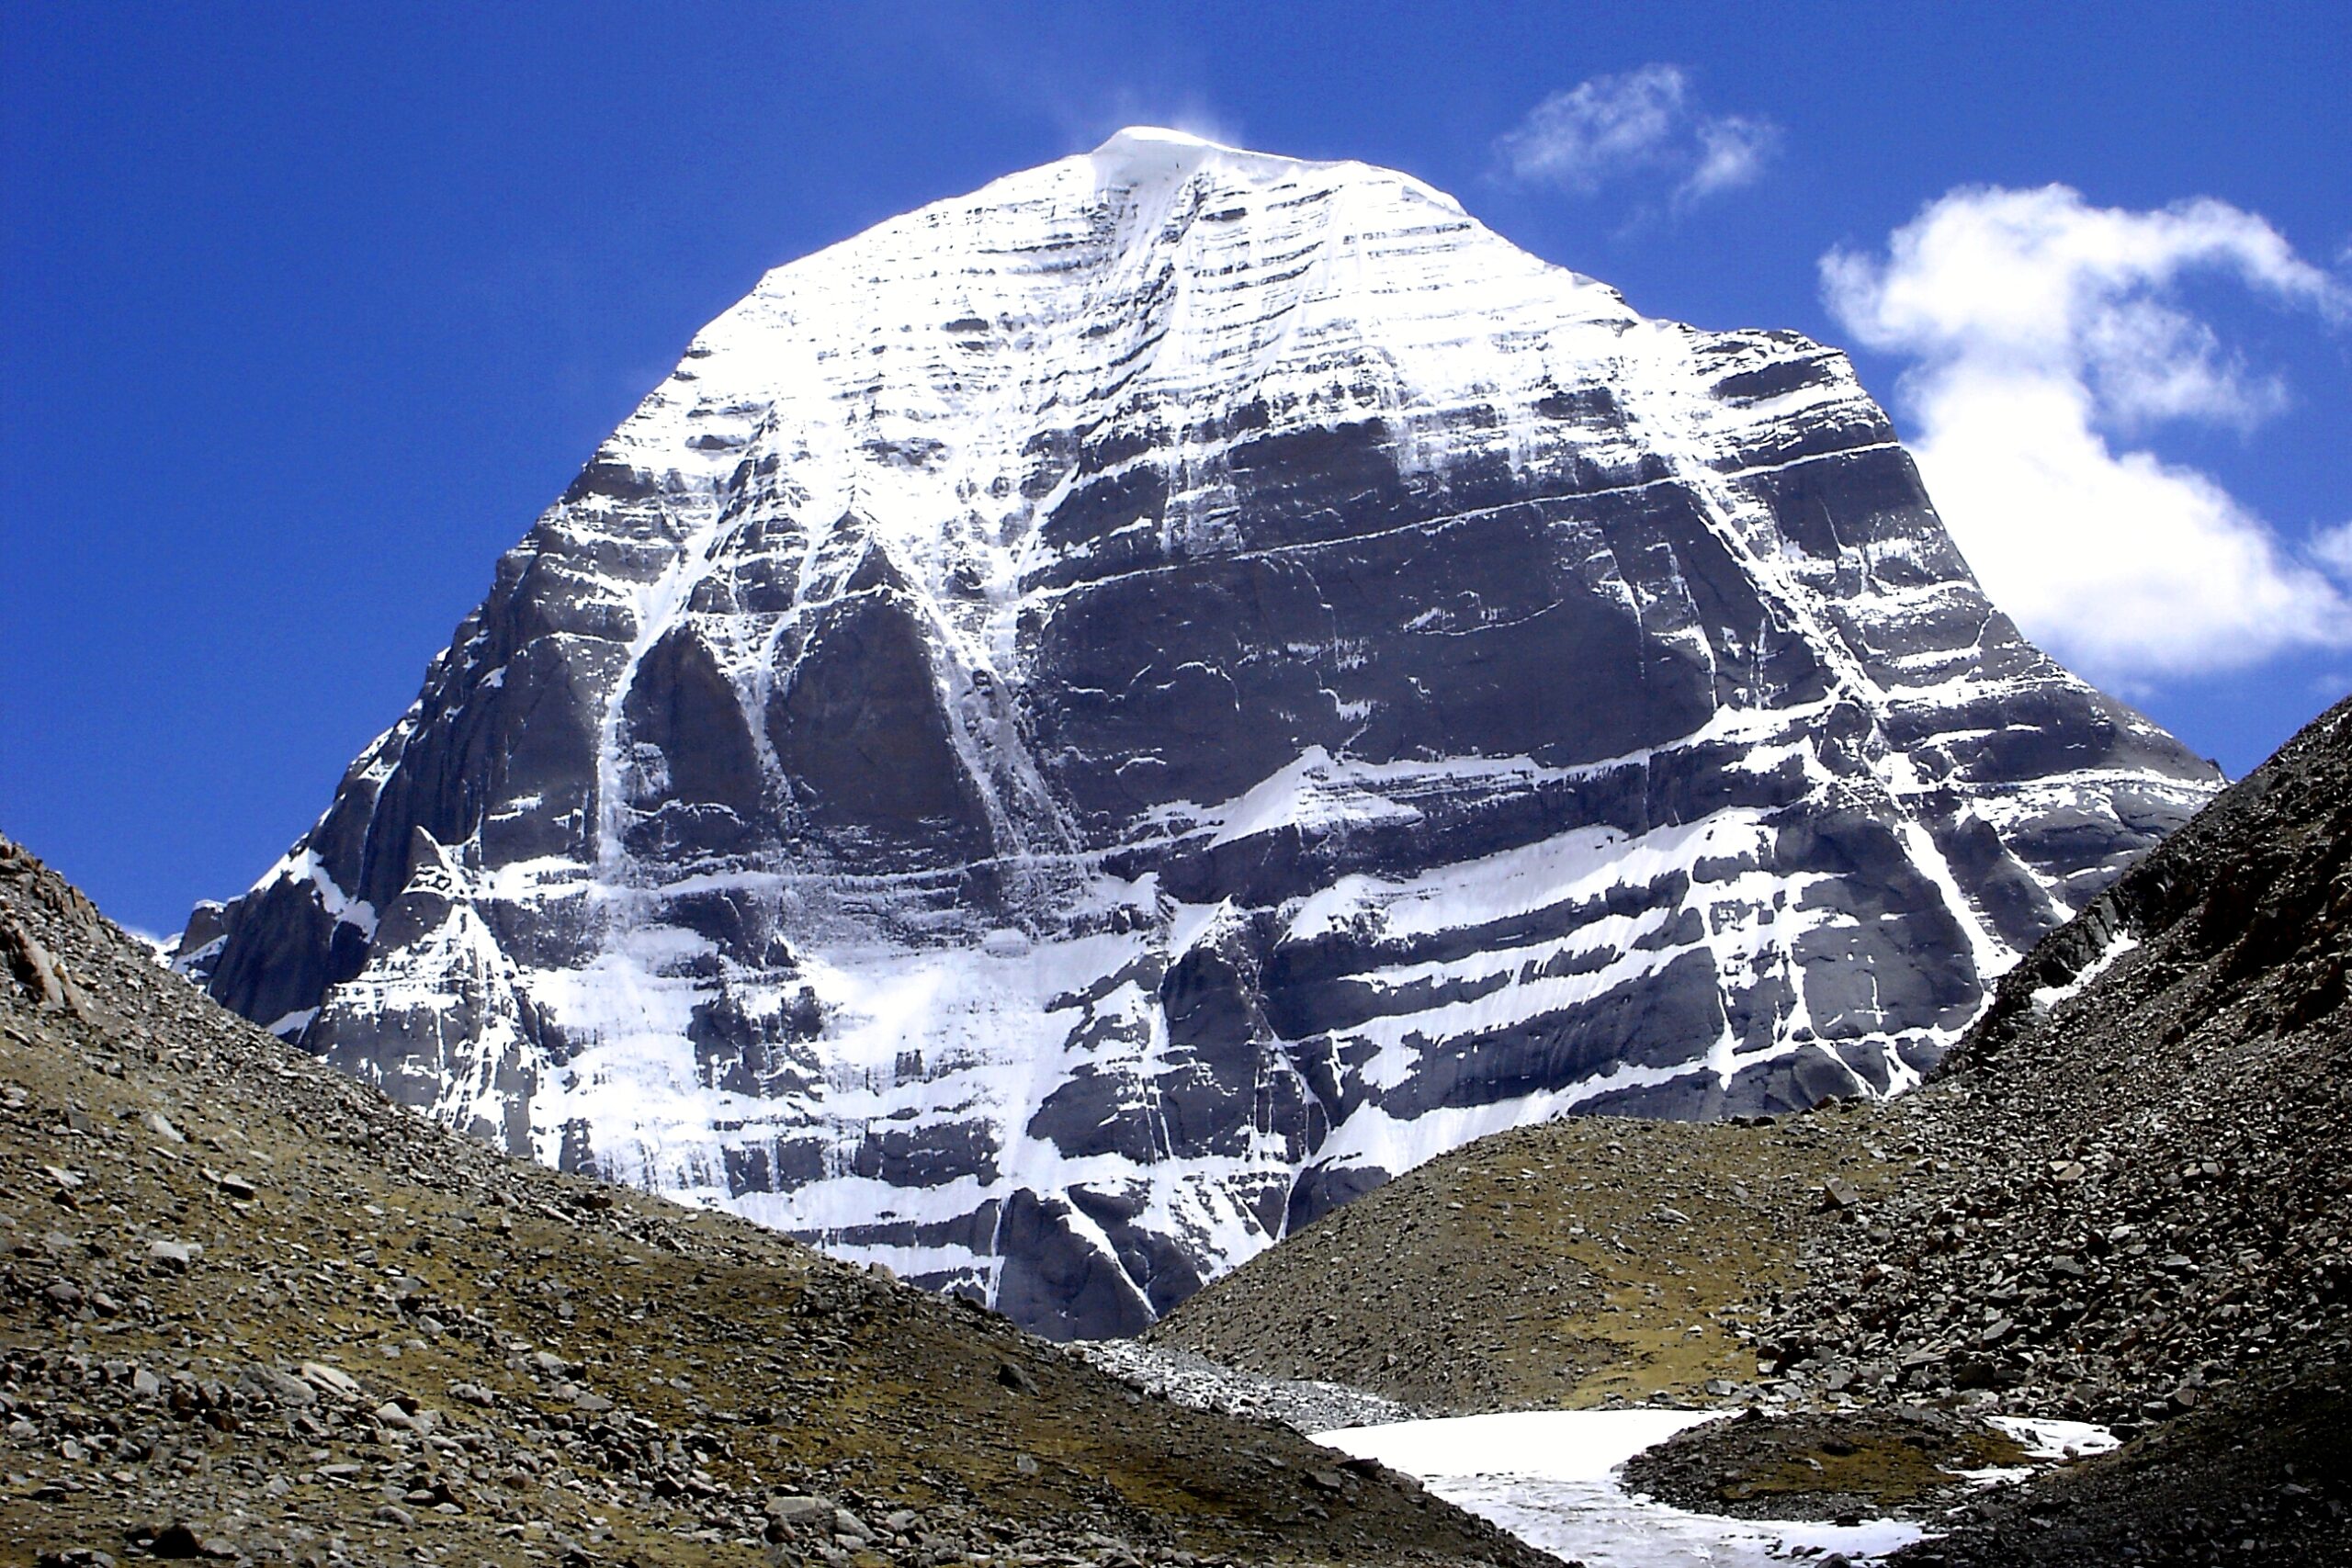 Mount Kailash Parbat